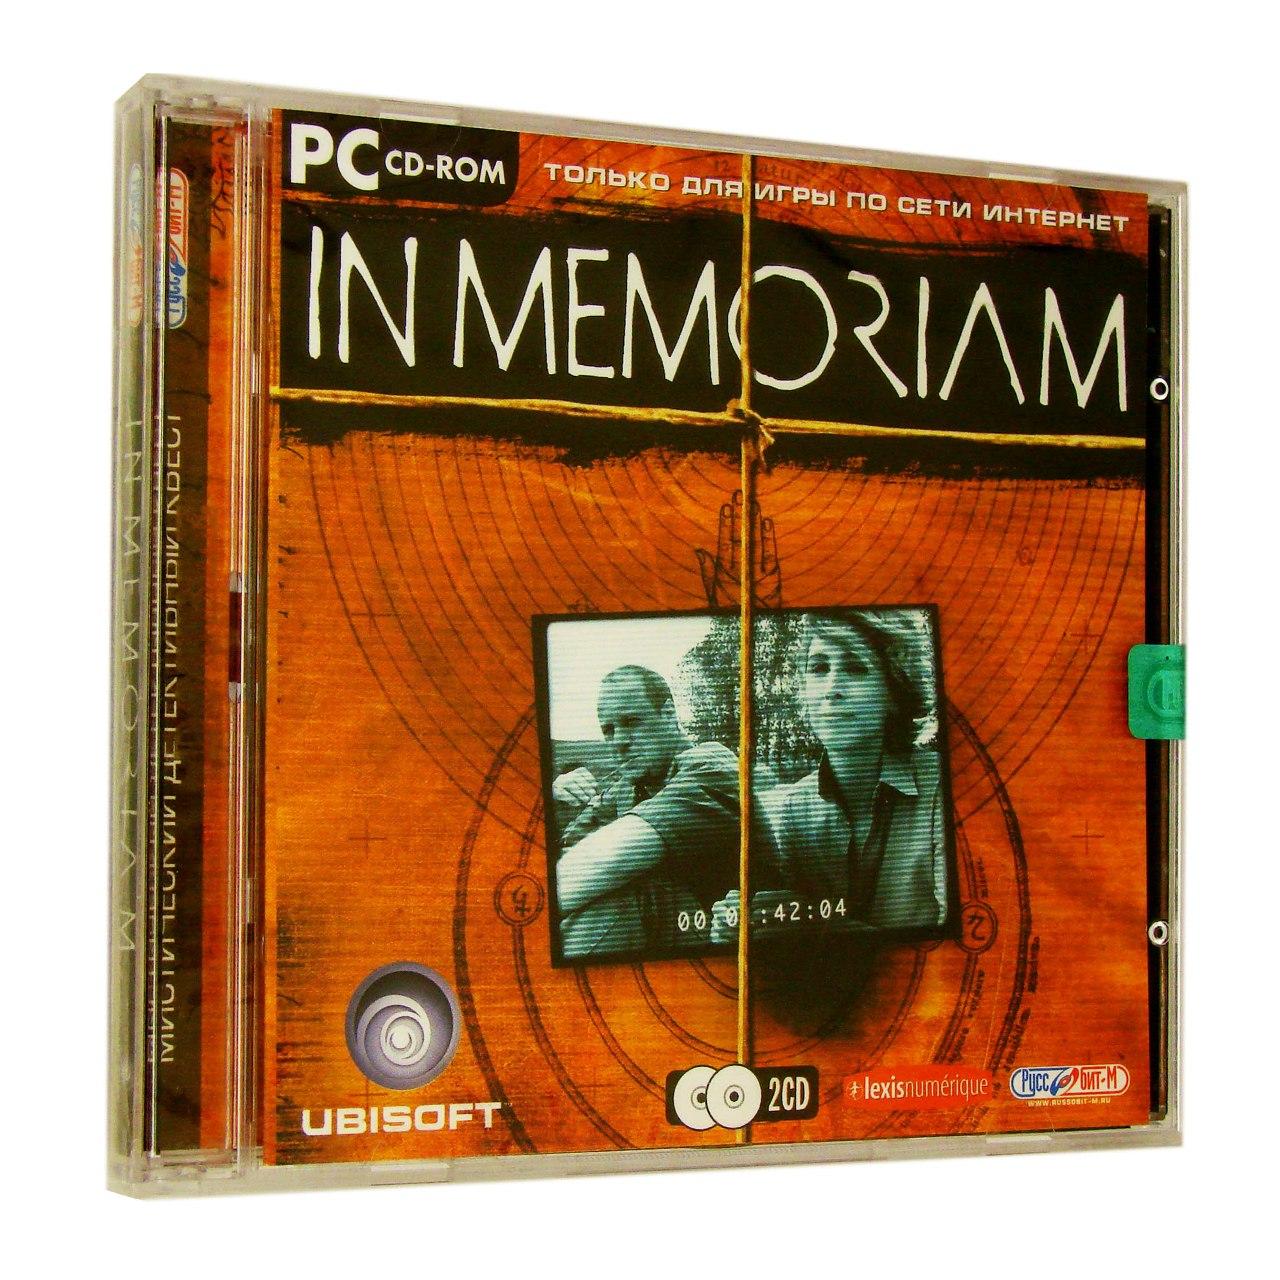 Компьютерный компакт-диск In Memoriam (PC), фирма "Руссобит-М", 2CD